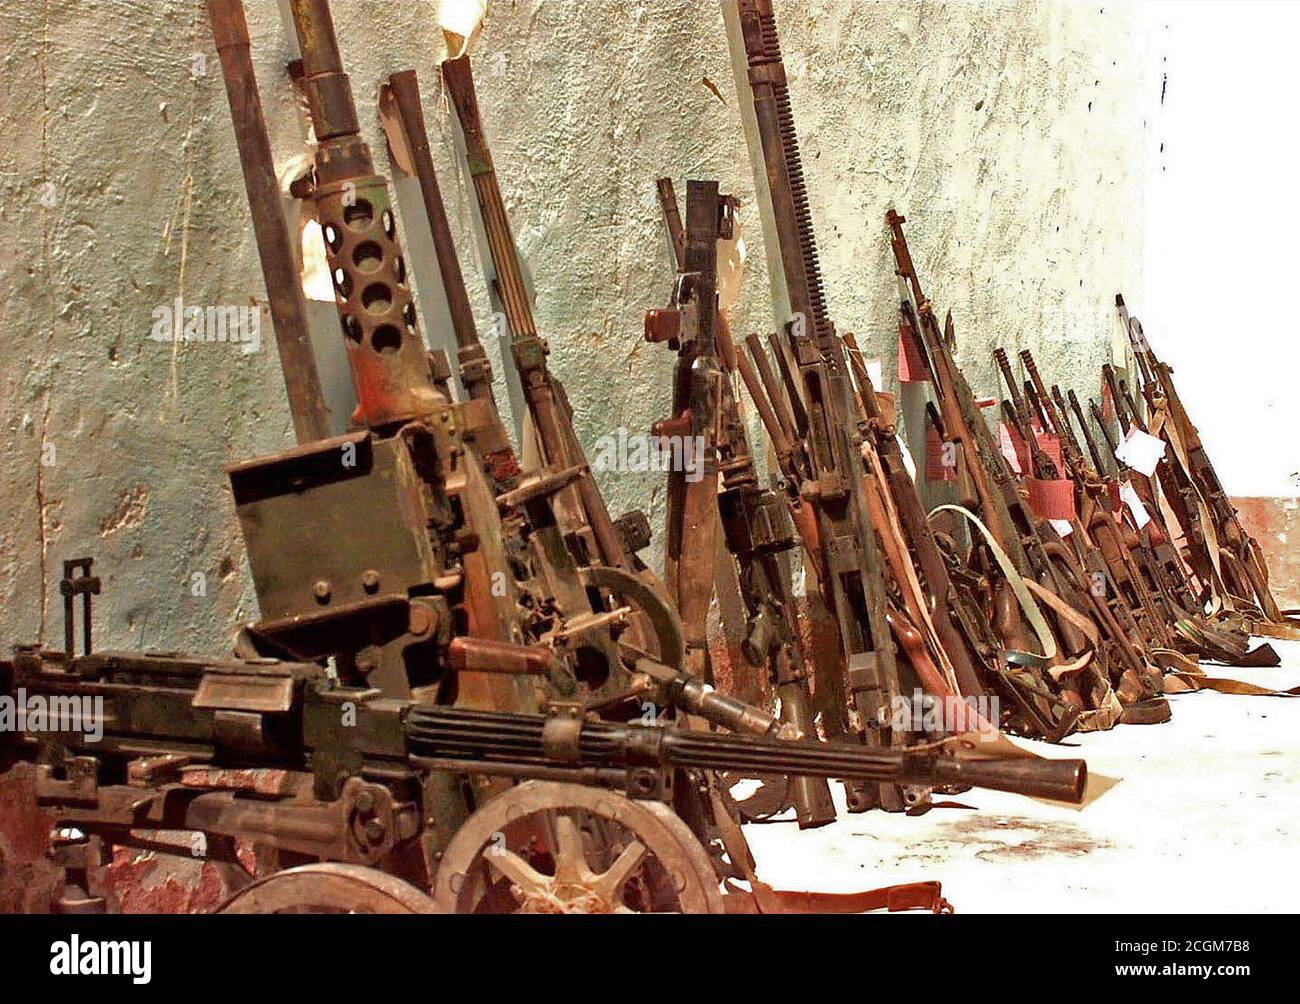 1993 - sequestrati armi somala al checkpoint Condor in Marka, Somalia. Essi sono per la maggior parte di piccole armi e armi di equipaggio che sono schierati contro il muro di un edificio. Foto Stock